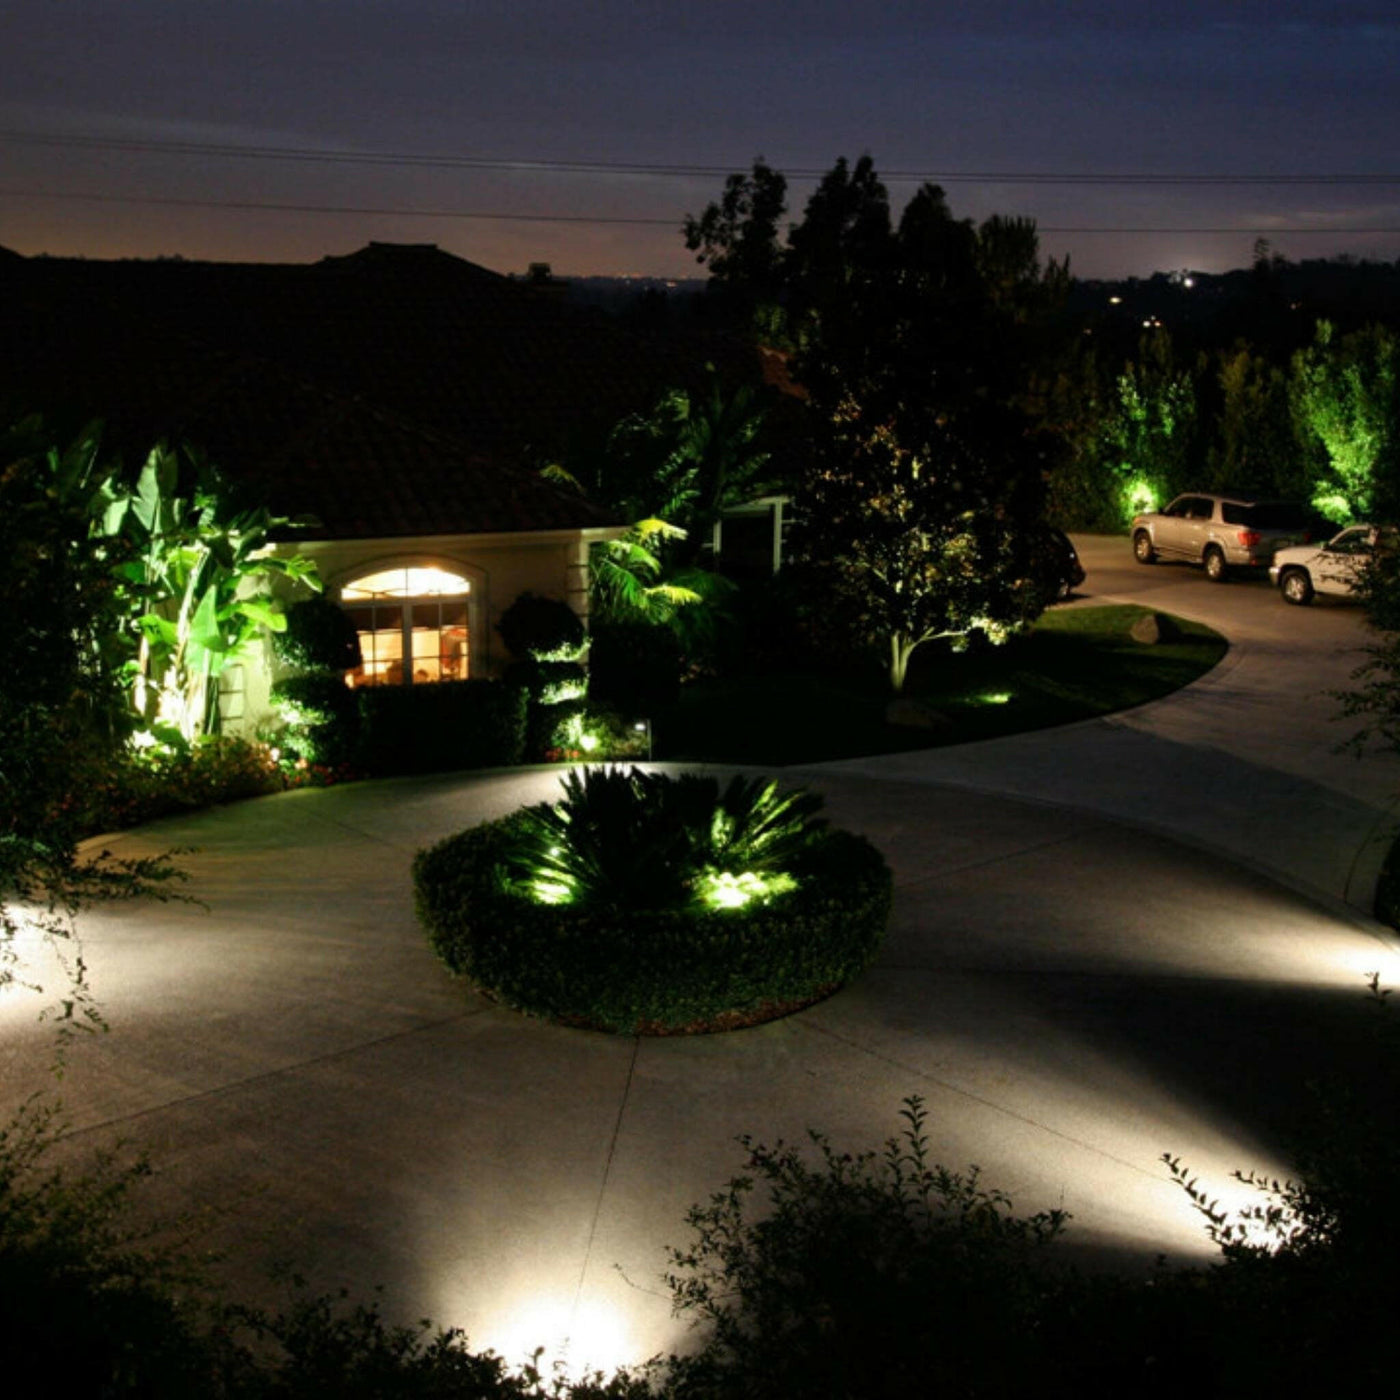 Top-Notch™ Illuminator Brass Flood Outdoor Light (Antique Bronze) - Top Notch Landscape Lighting Top Notch Landscape Lighting